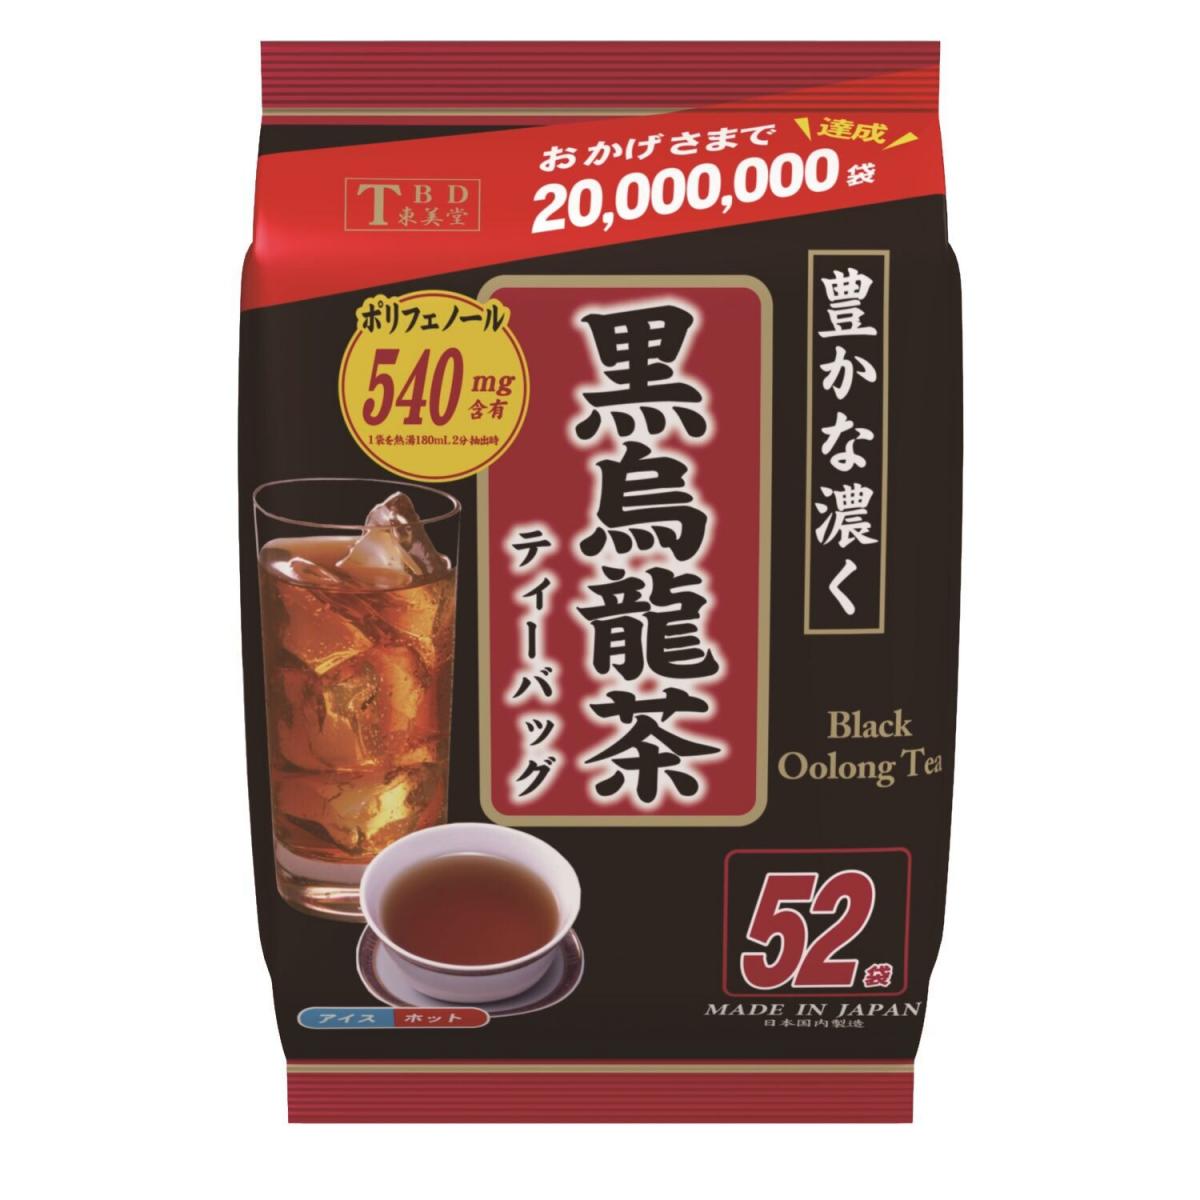 東美堂| 黑烏龍茶【每包52個小茶包】| 阻斷脂肪吸收沒有任何糖分和添加甜味劑| | HKTVmall 香港最大網購平台